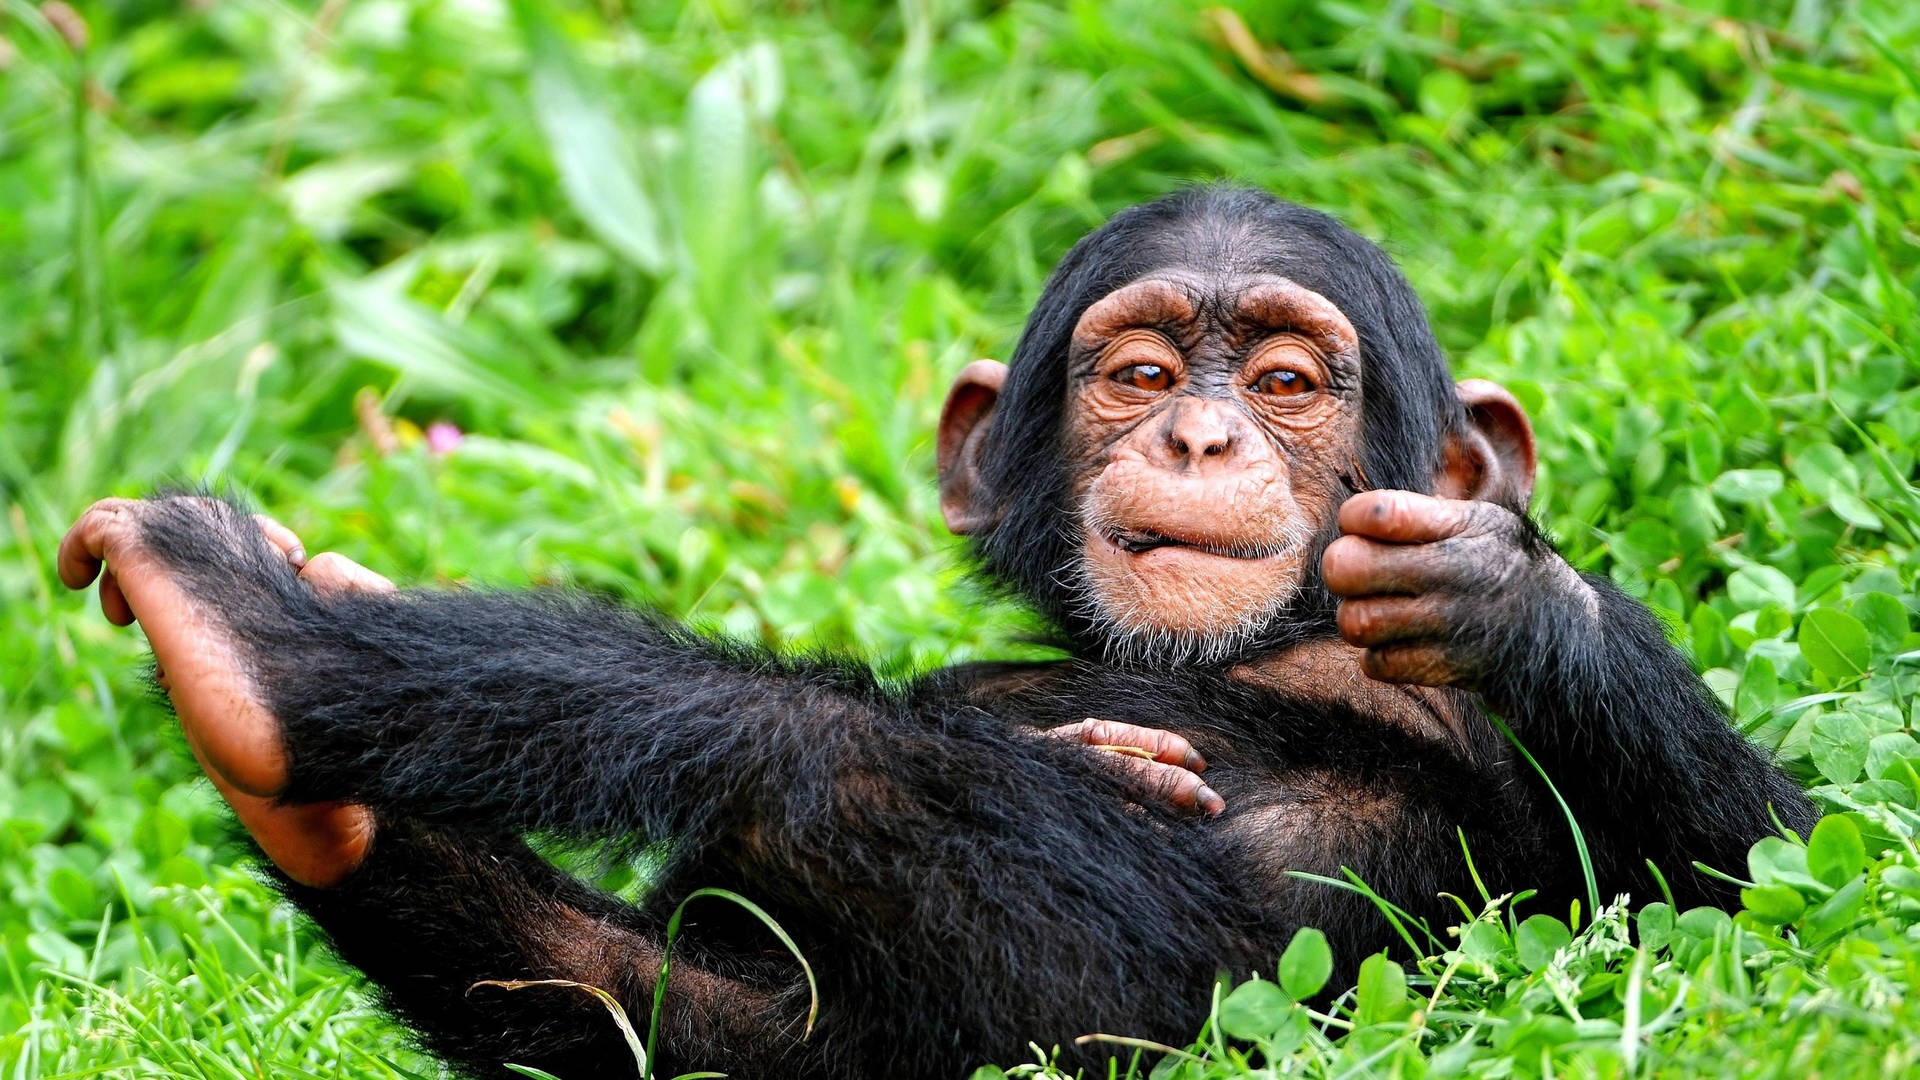 Baby Chimpanzee At Grassy Ground